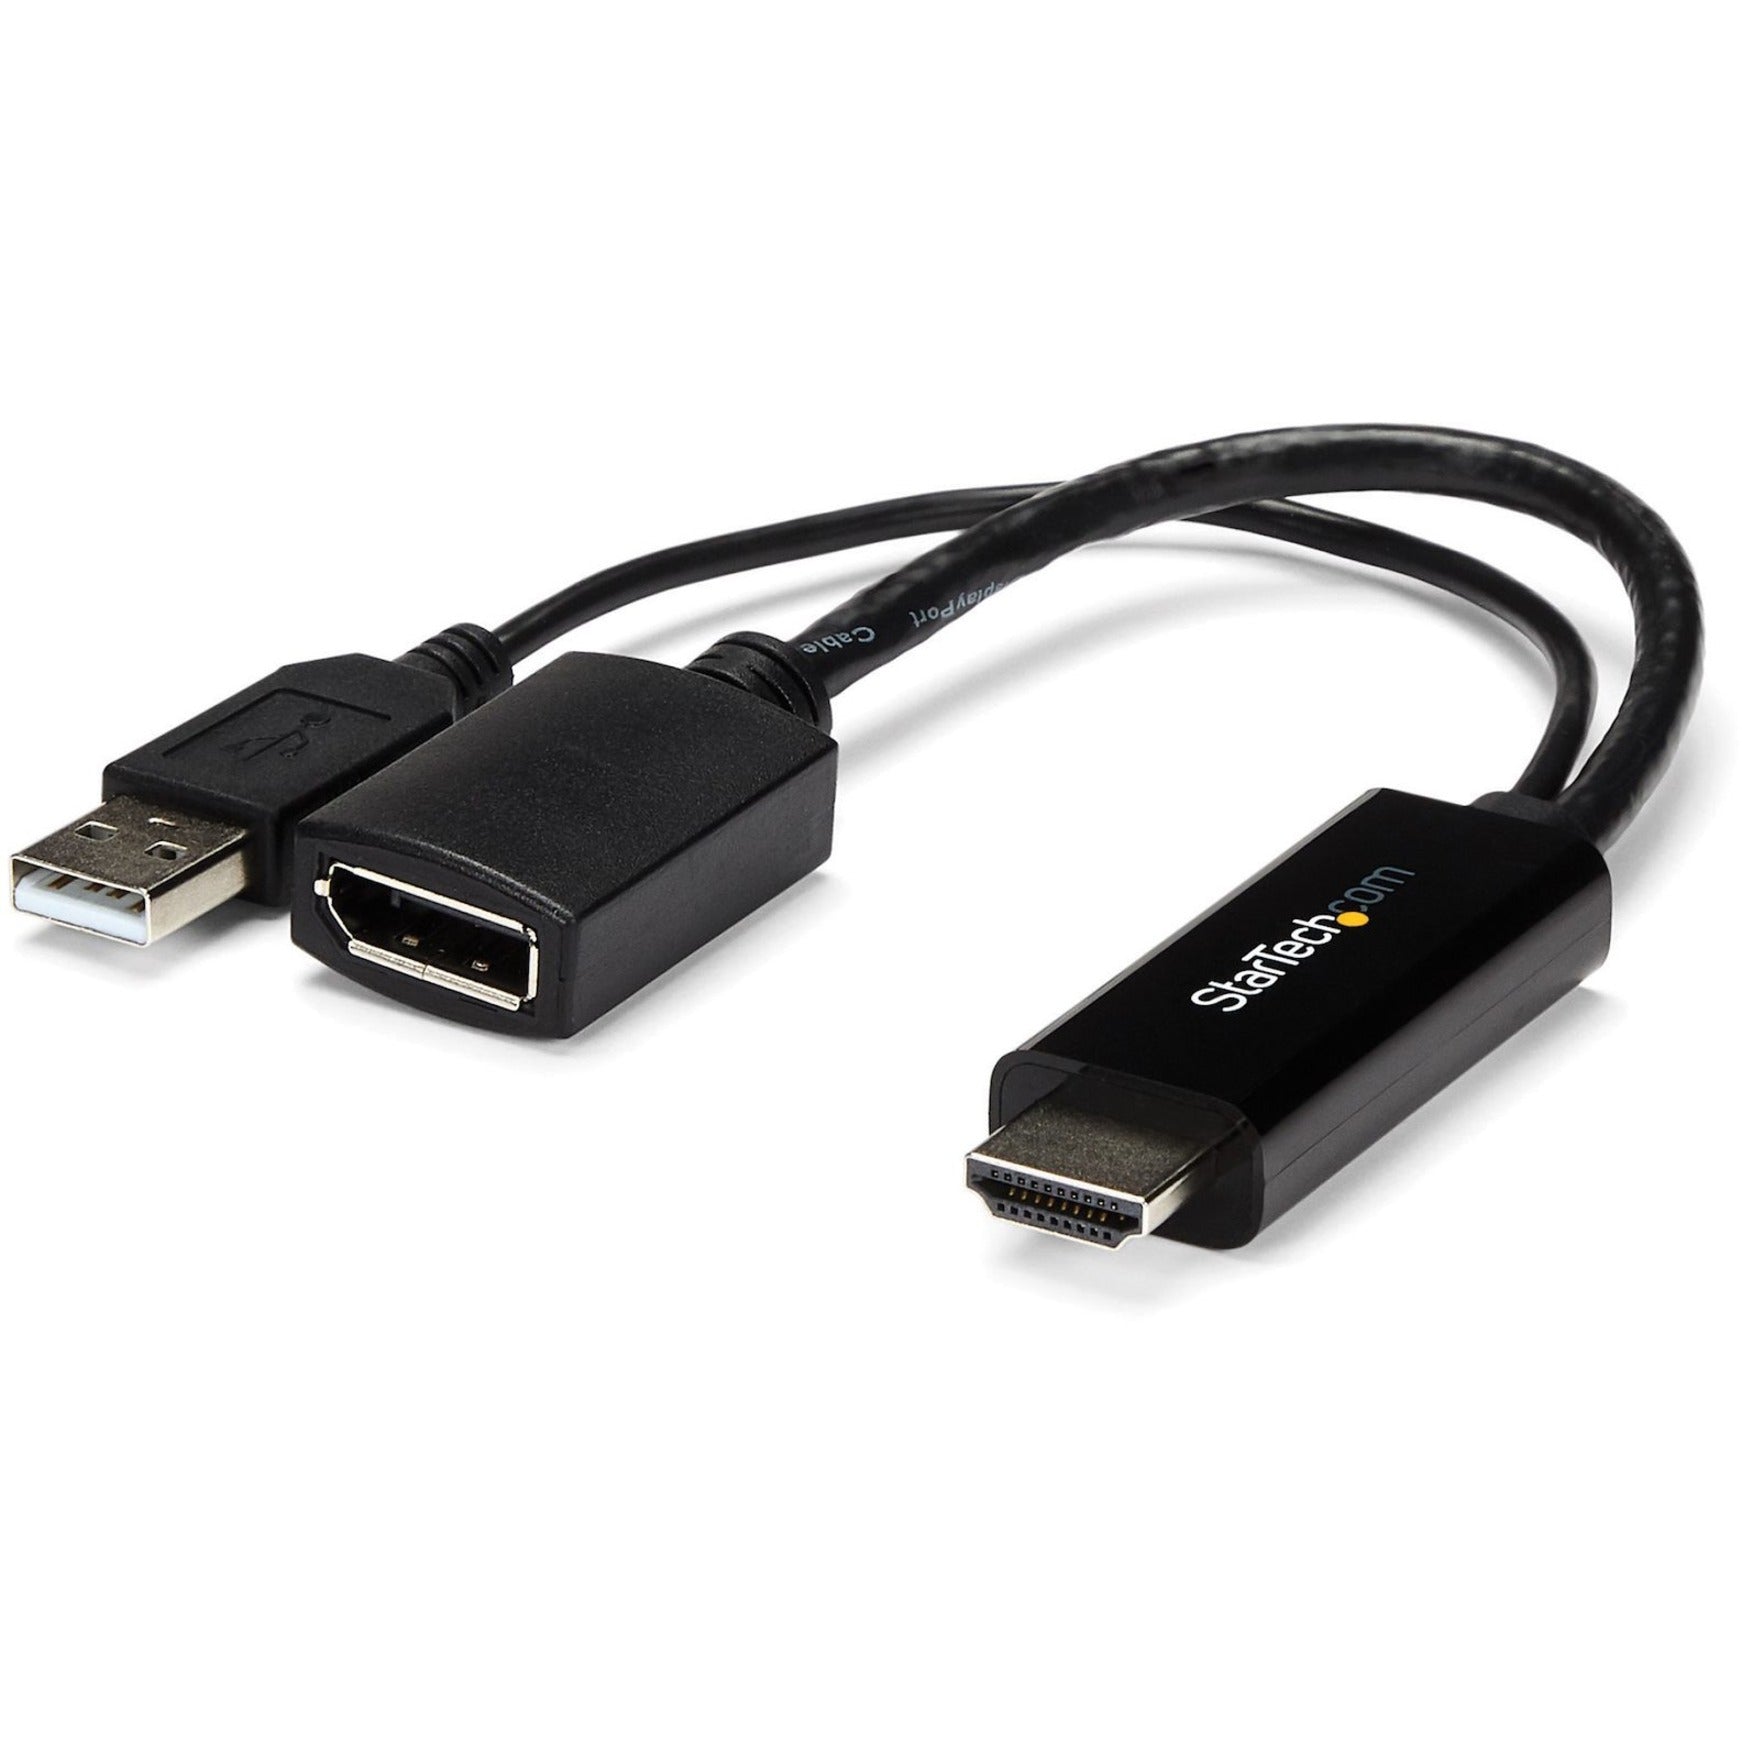 محول StarTech.com HD2DP HDMI إلى DisplayPort - محول HDMI إلى DP مع طاقة USB - 4K، محول فيديو سهل الاستخدام  اسم العلامة التجارية: ستارتيك.كوم